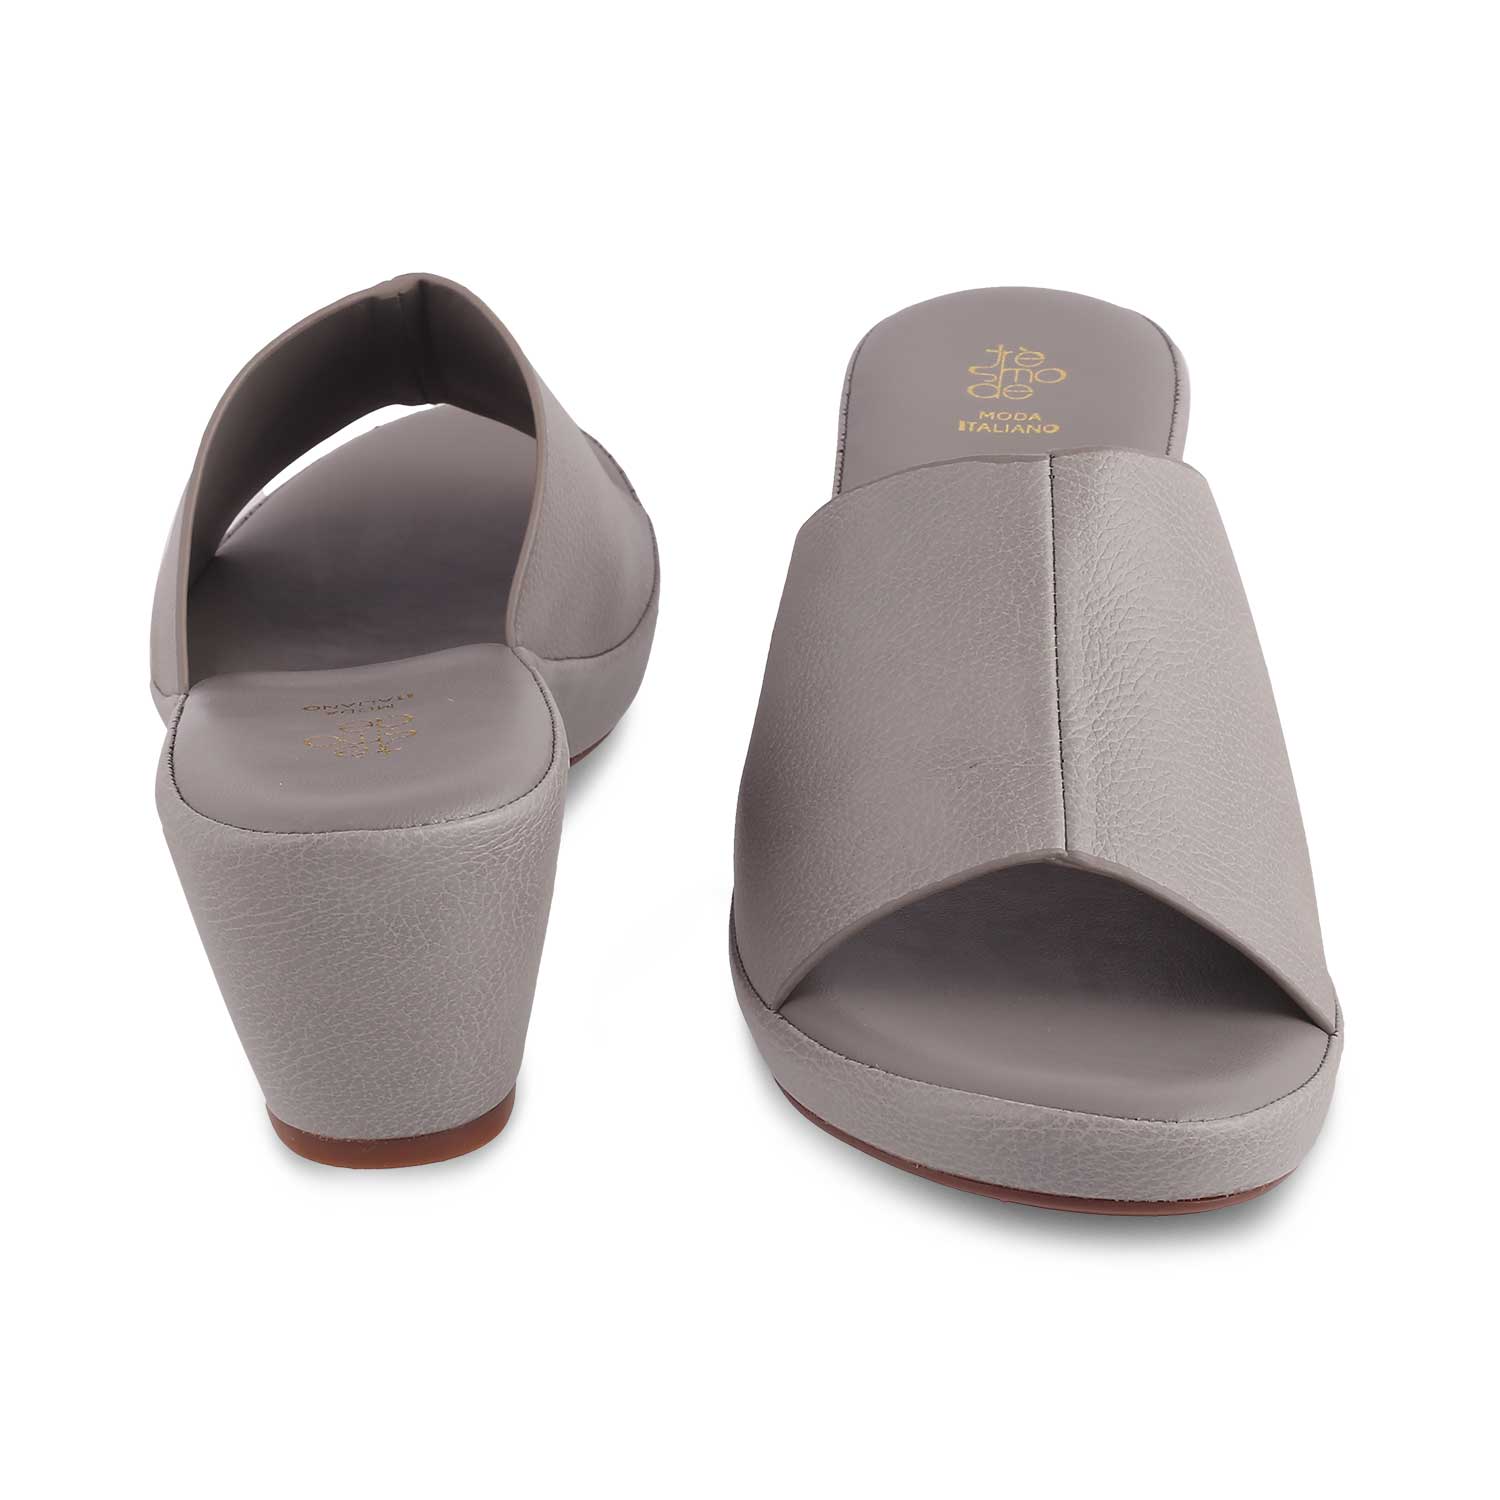 The Brixyed Grey Women's Casual Block Heel Sandals Tresmode - Tresmode